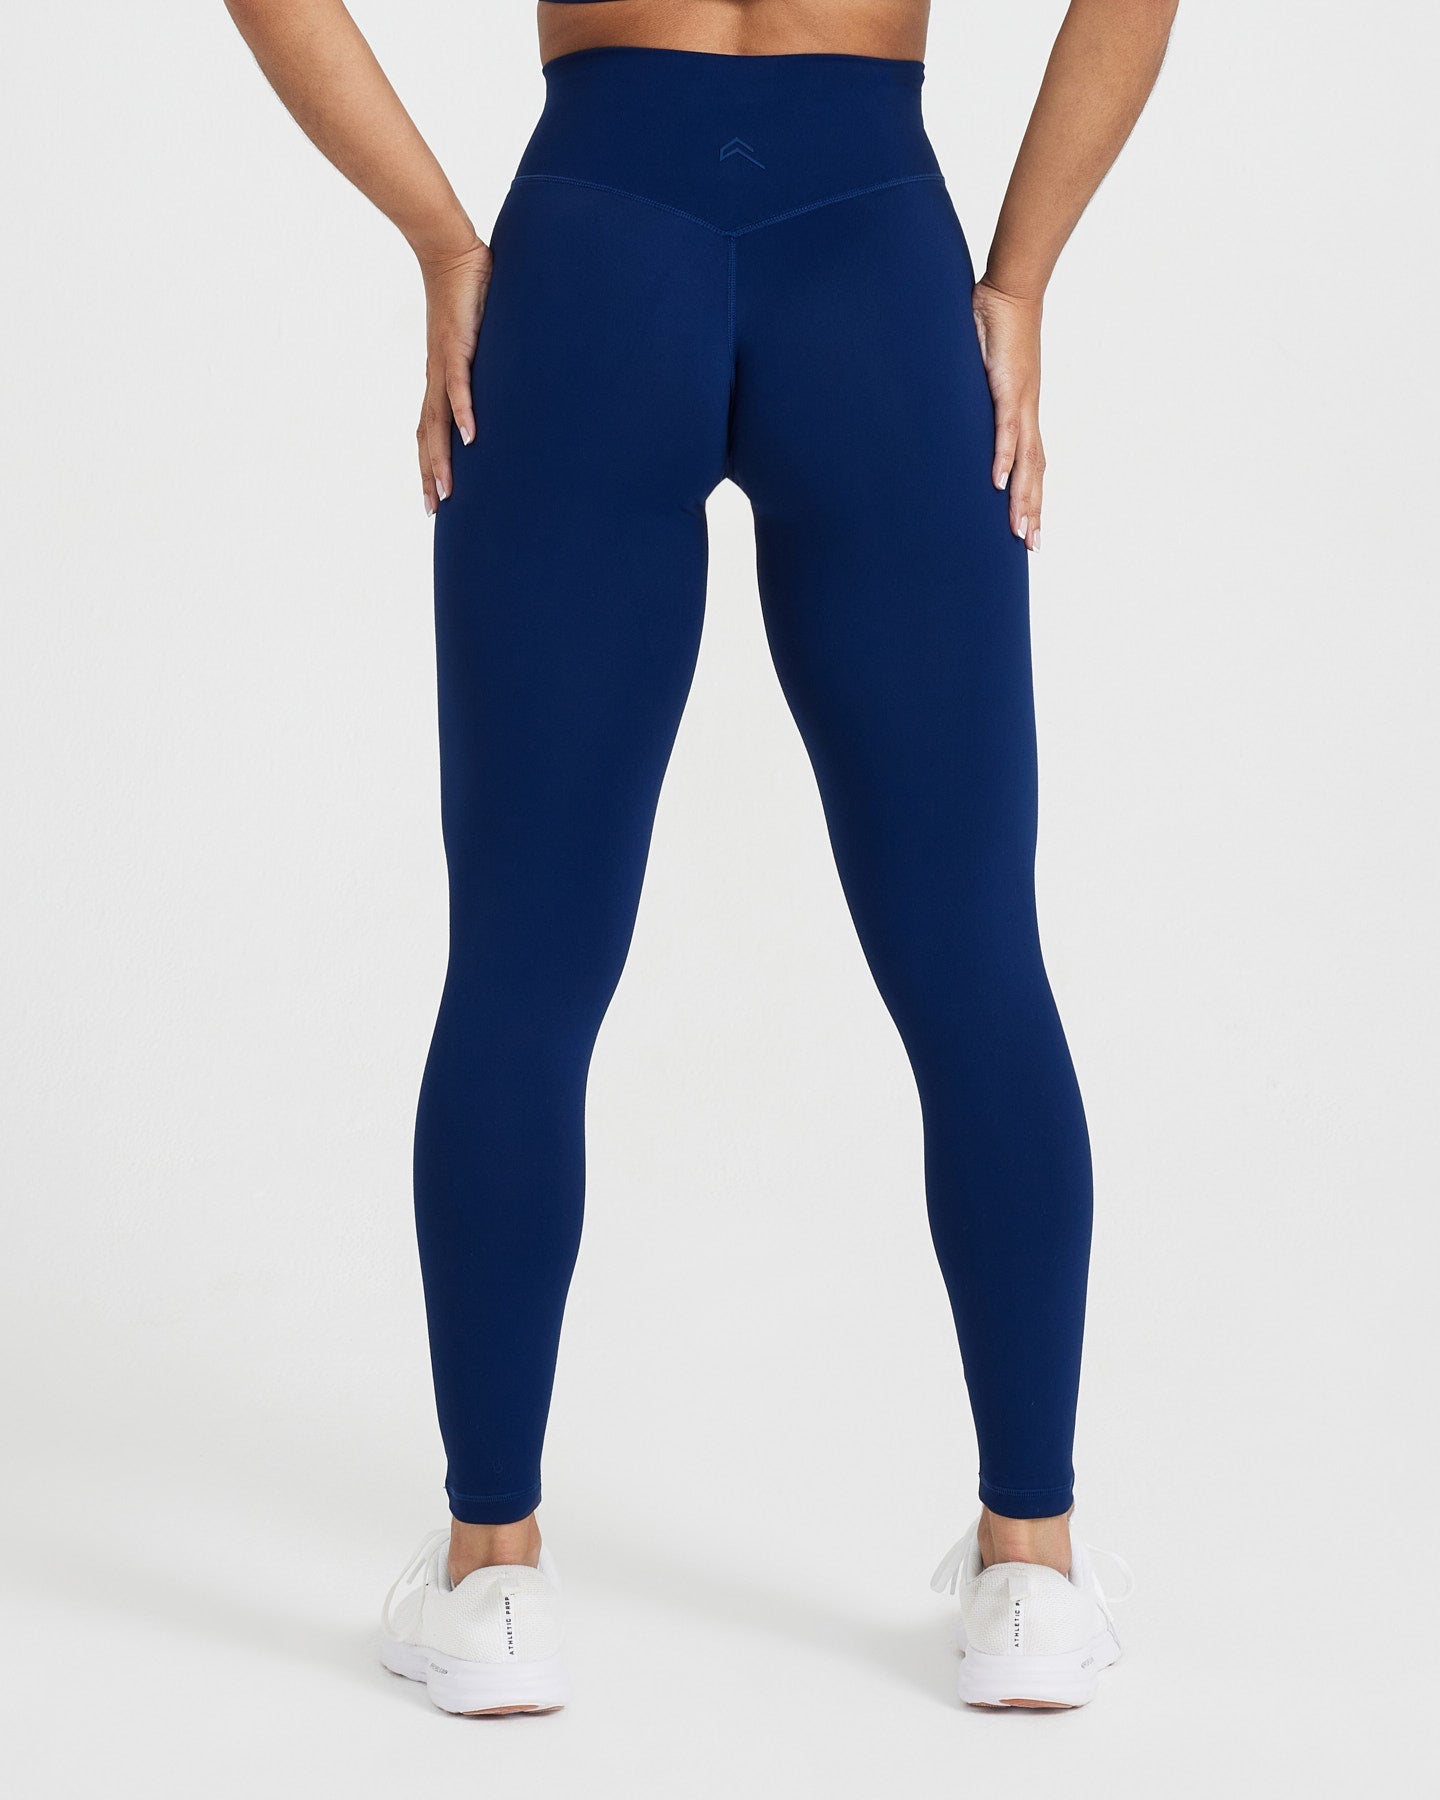 Women's workout leggings blue ESSENZIALE